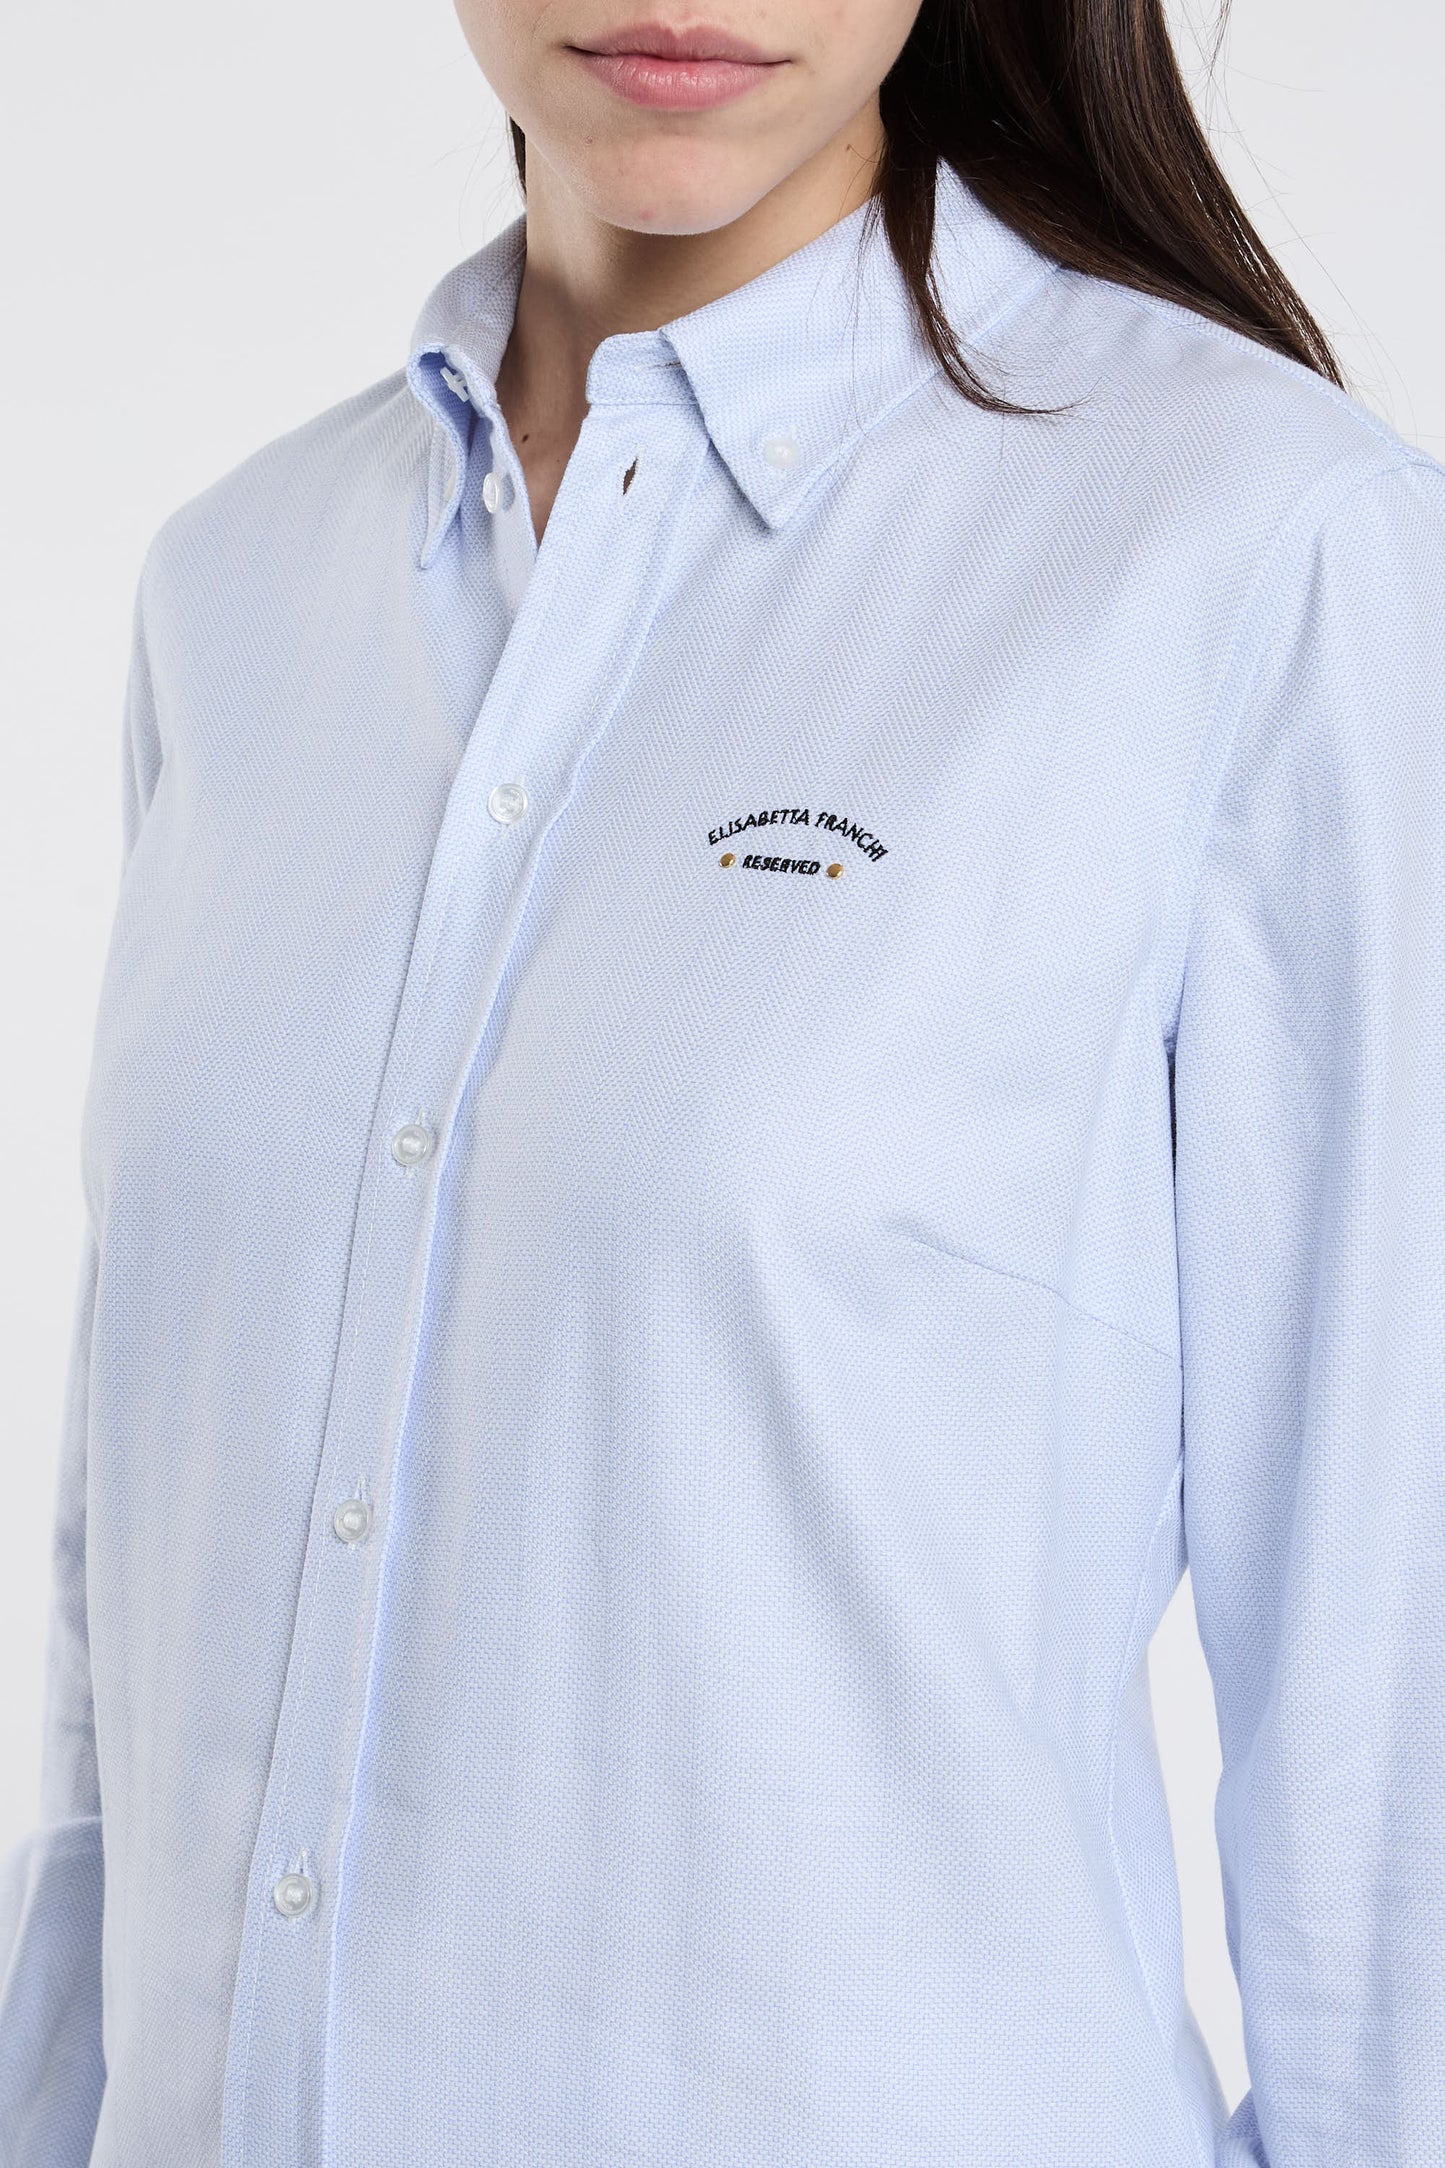  Elisabetta Franchi Multicolor Shirt 100% Co Azzurro Donna - 5